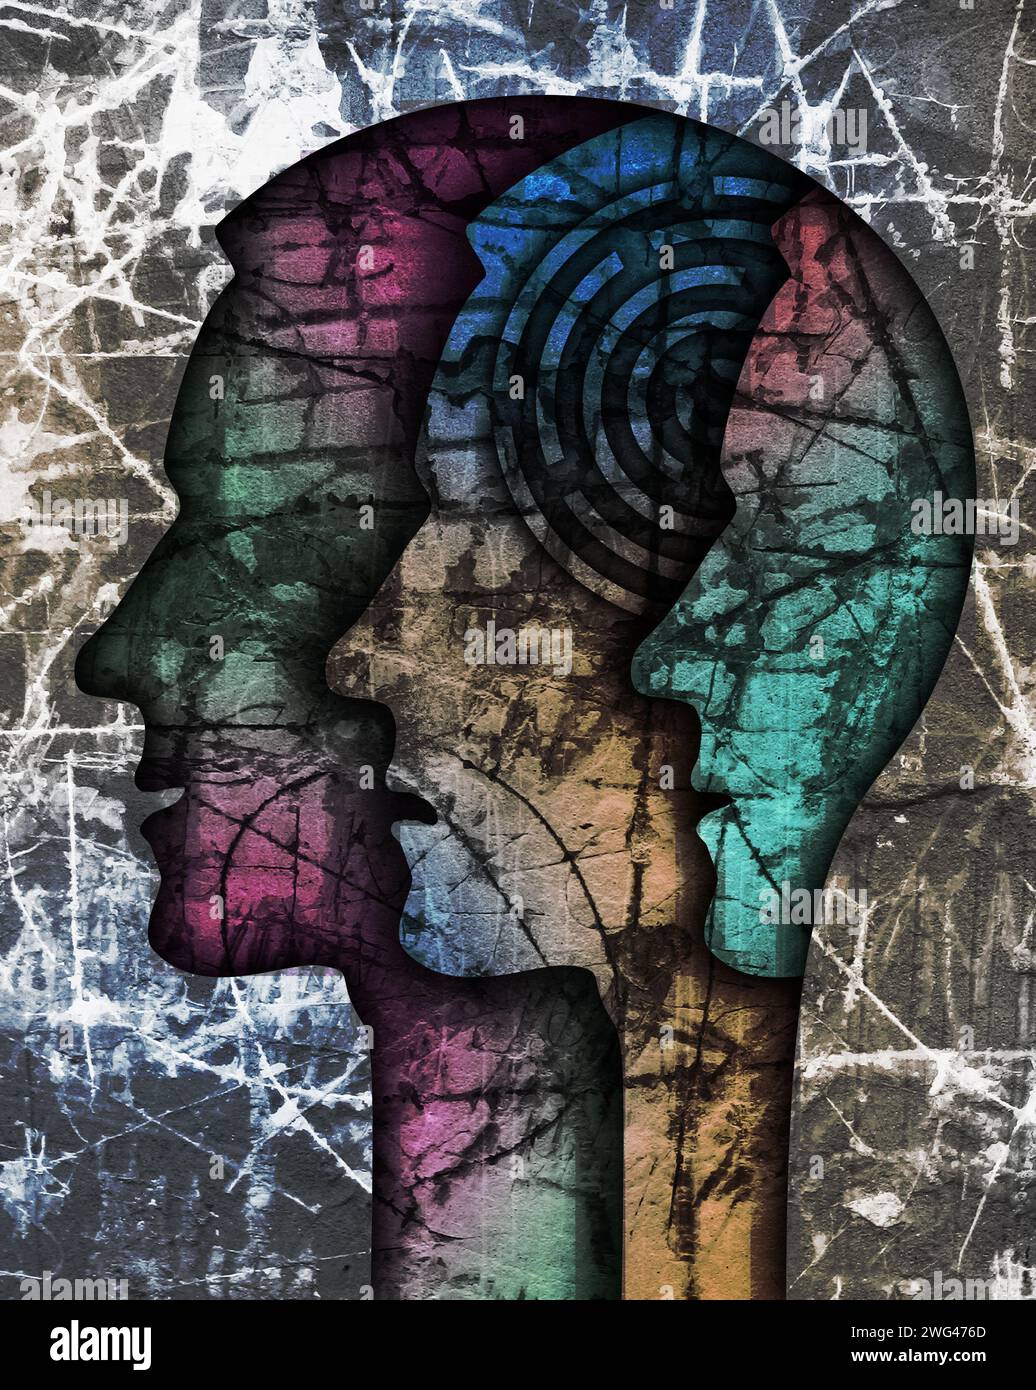 Schizophrenie männlichen Kopf Silhouette. Illustration mit drei stilisierten männlichen Köpfen auf Grunge-Textur, die die Schizophrenie-Depression symbolisiert. Stockfoto